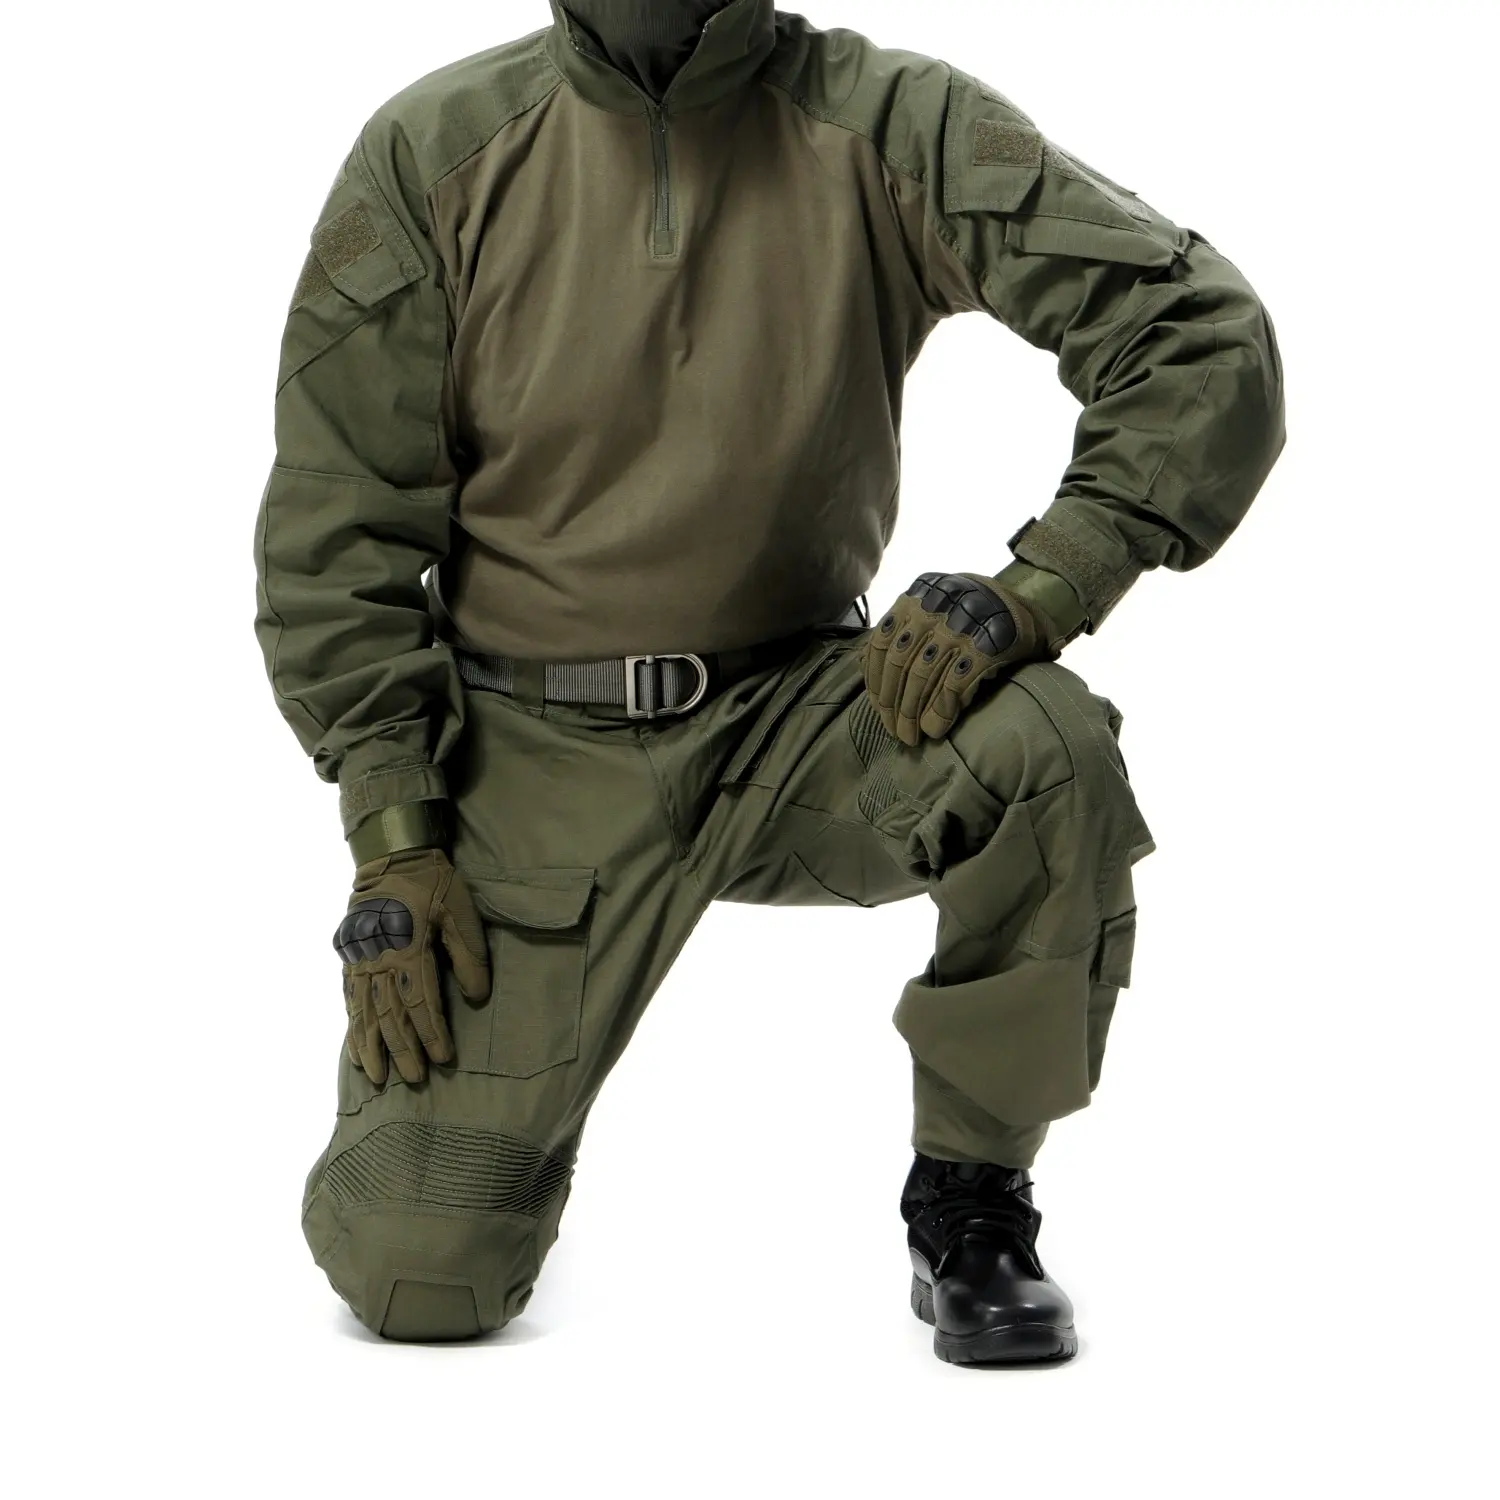 Kampf uniformen G3 Hemd und Hose Range Green Outdoor Jagd Kampf hose Kleidung Frosch Anzug Taktische Uniform